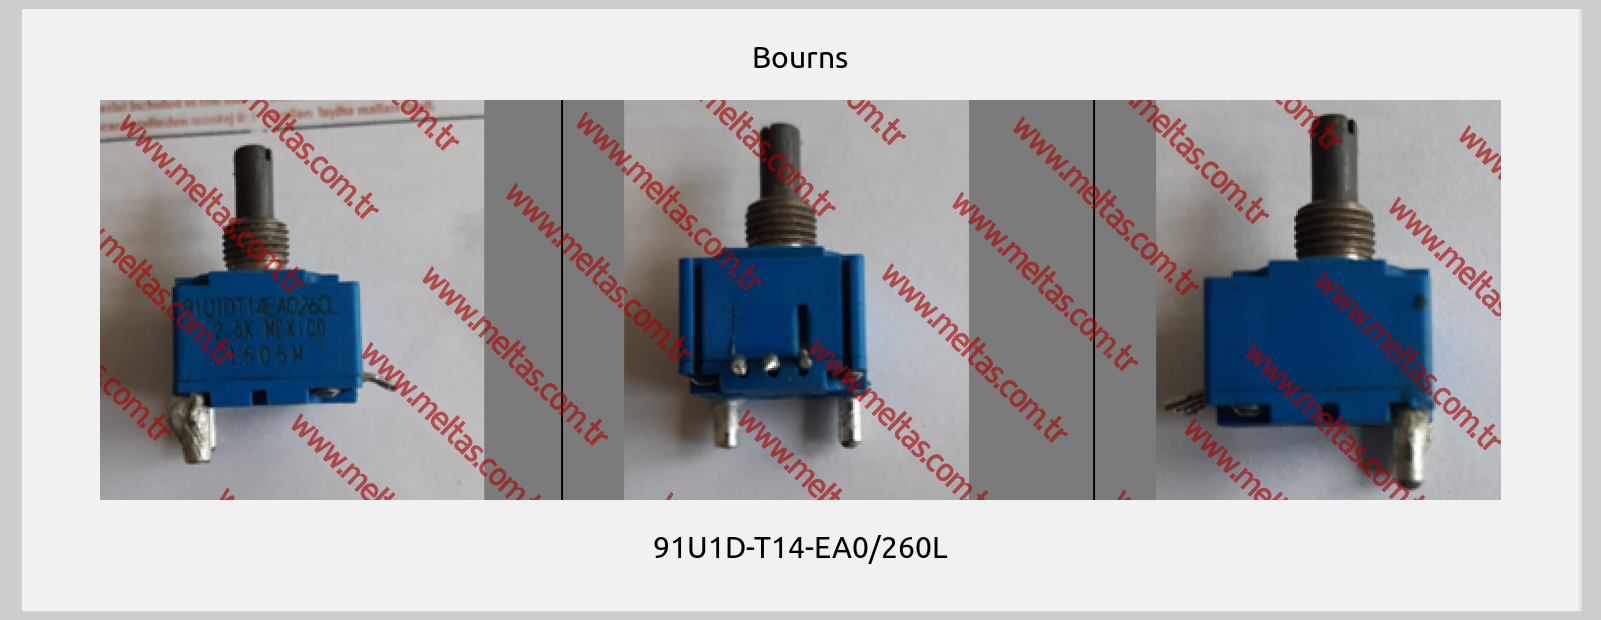 Bourns - 91U1D-T14-EA0/260L